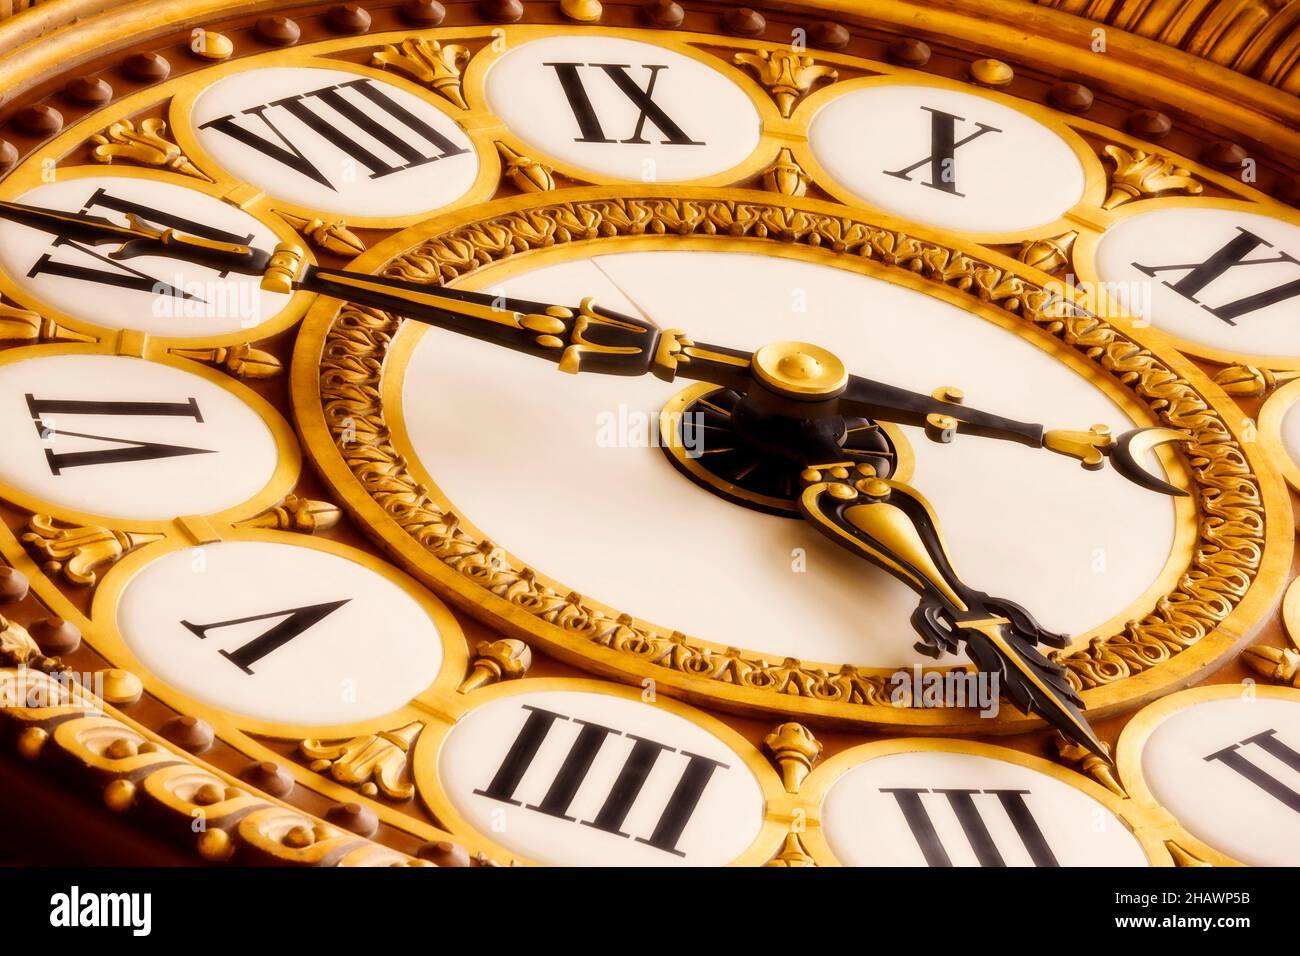 Horloge ornée au Musée d'Orsay, Paris, France Banque D'Images